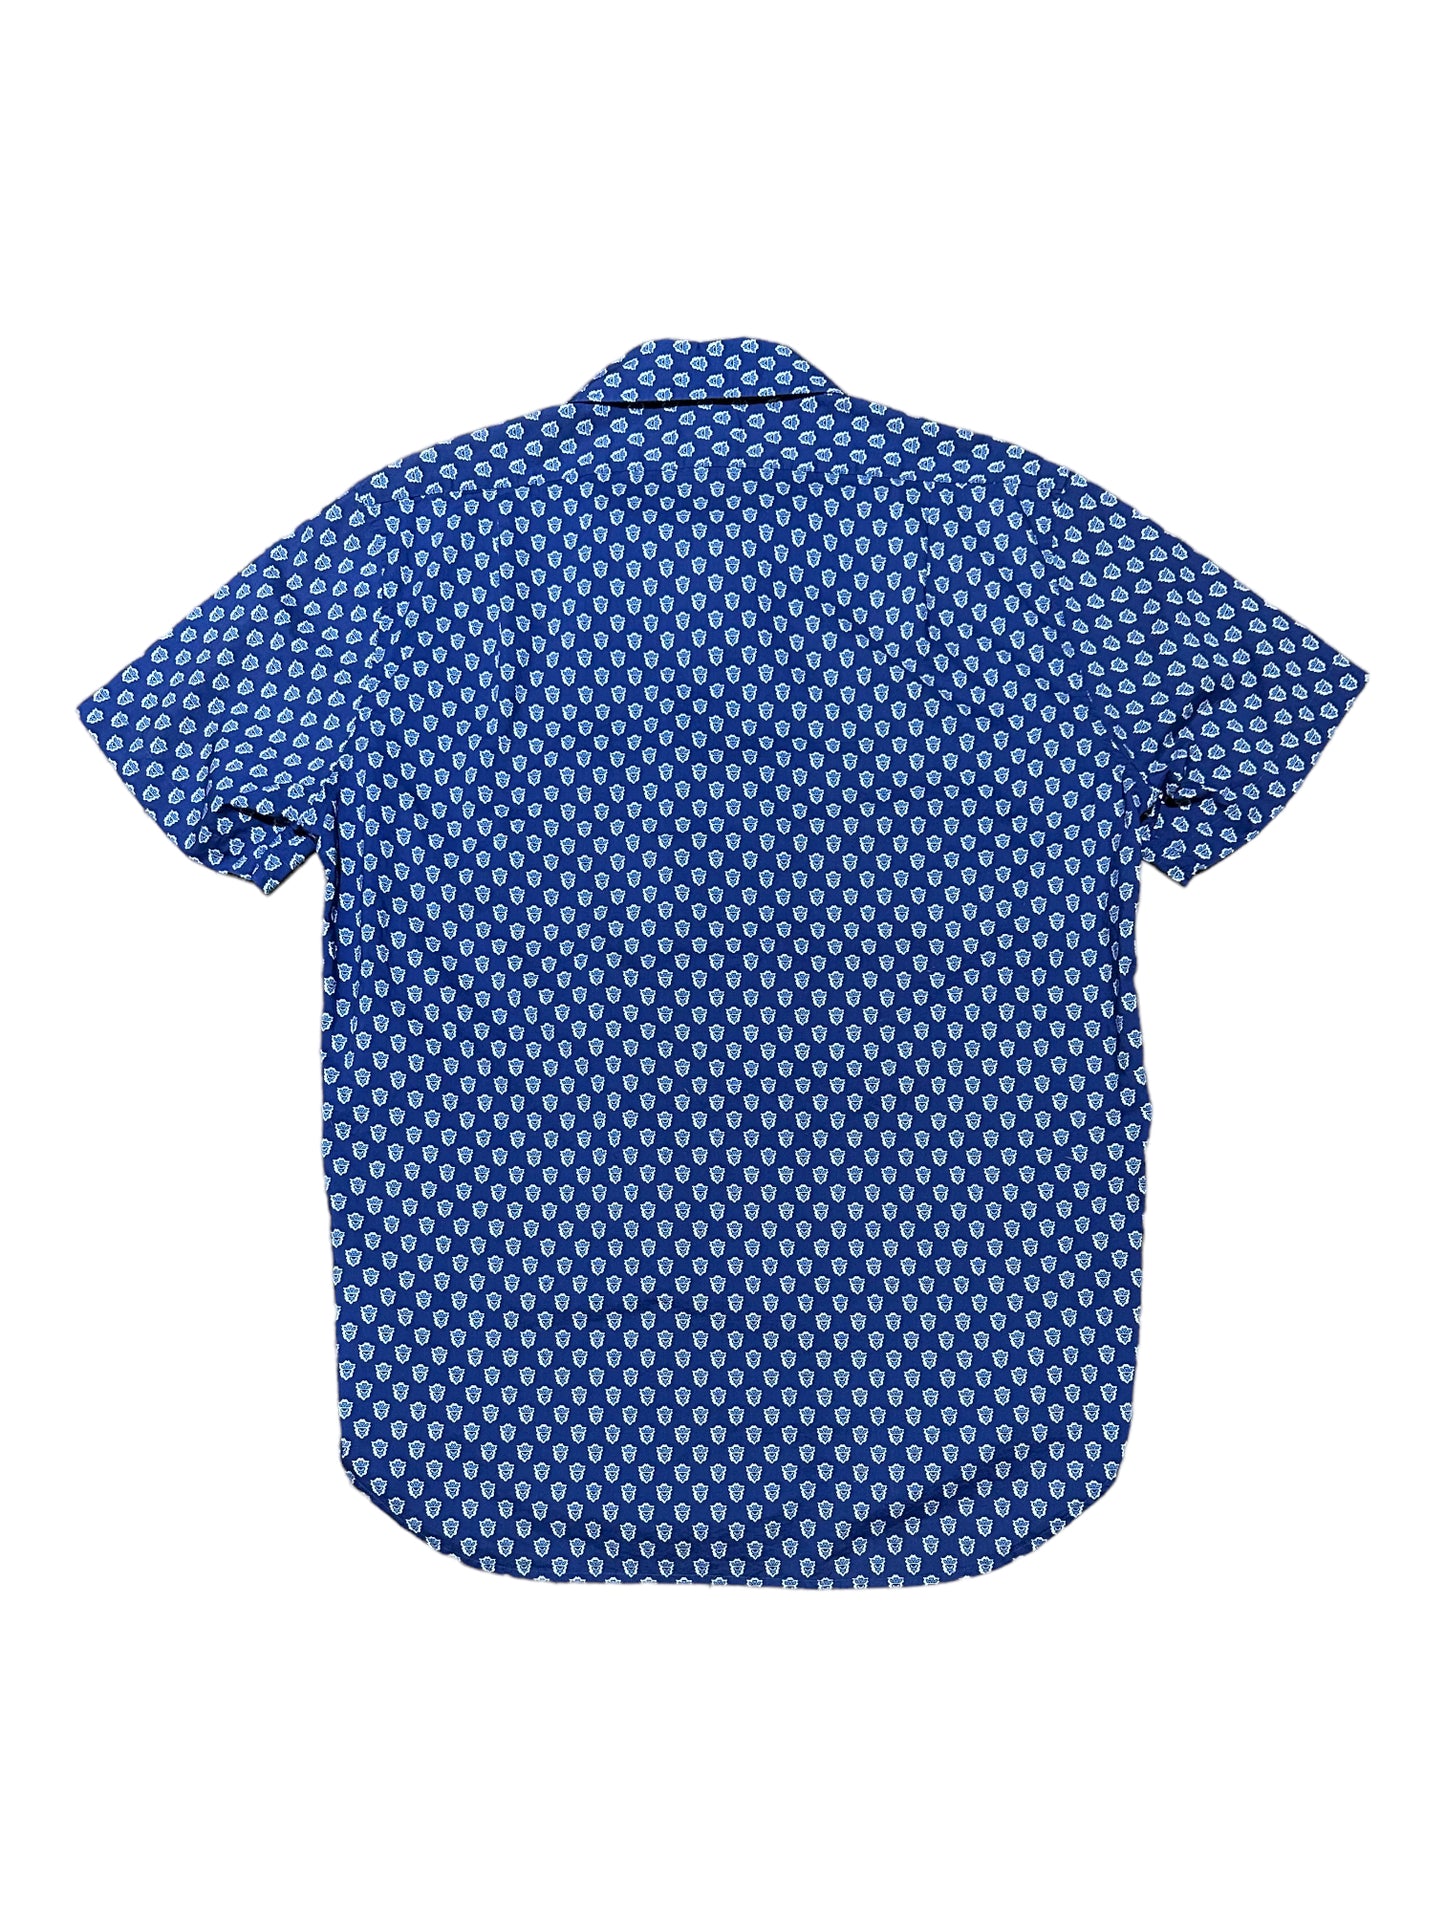 Lincs Blue Cotton Button Up Short Sleeve Casual Shirt